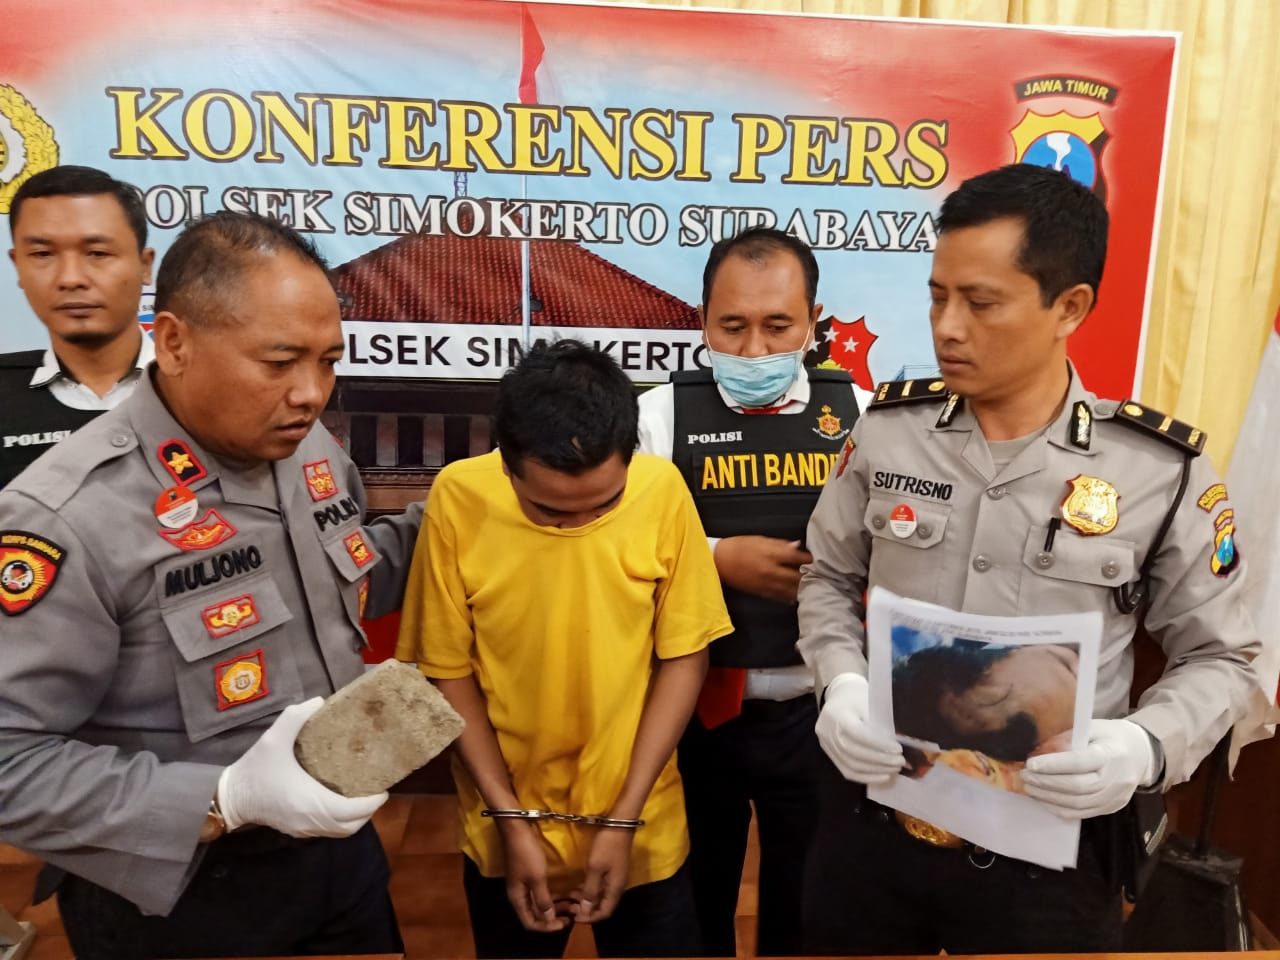 Ungkap kasus pengeroyokan terhadap pemuda sampai sekarat di Mapolsek Simokerto, Surabaya. (Foto: Faiq/ngopibareng.id)